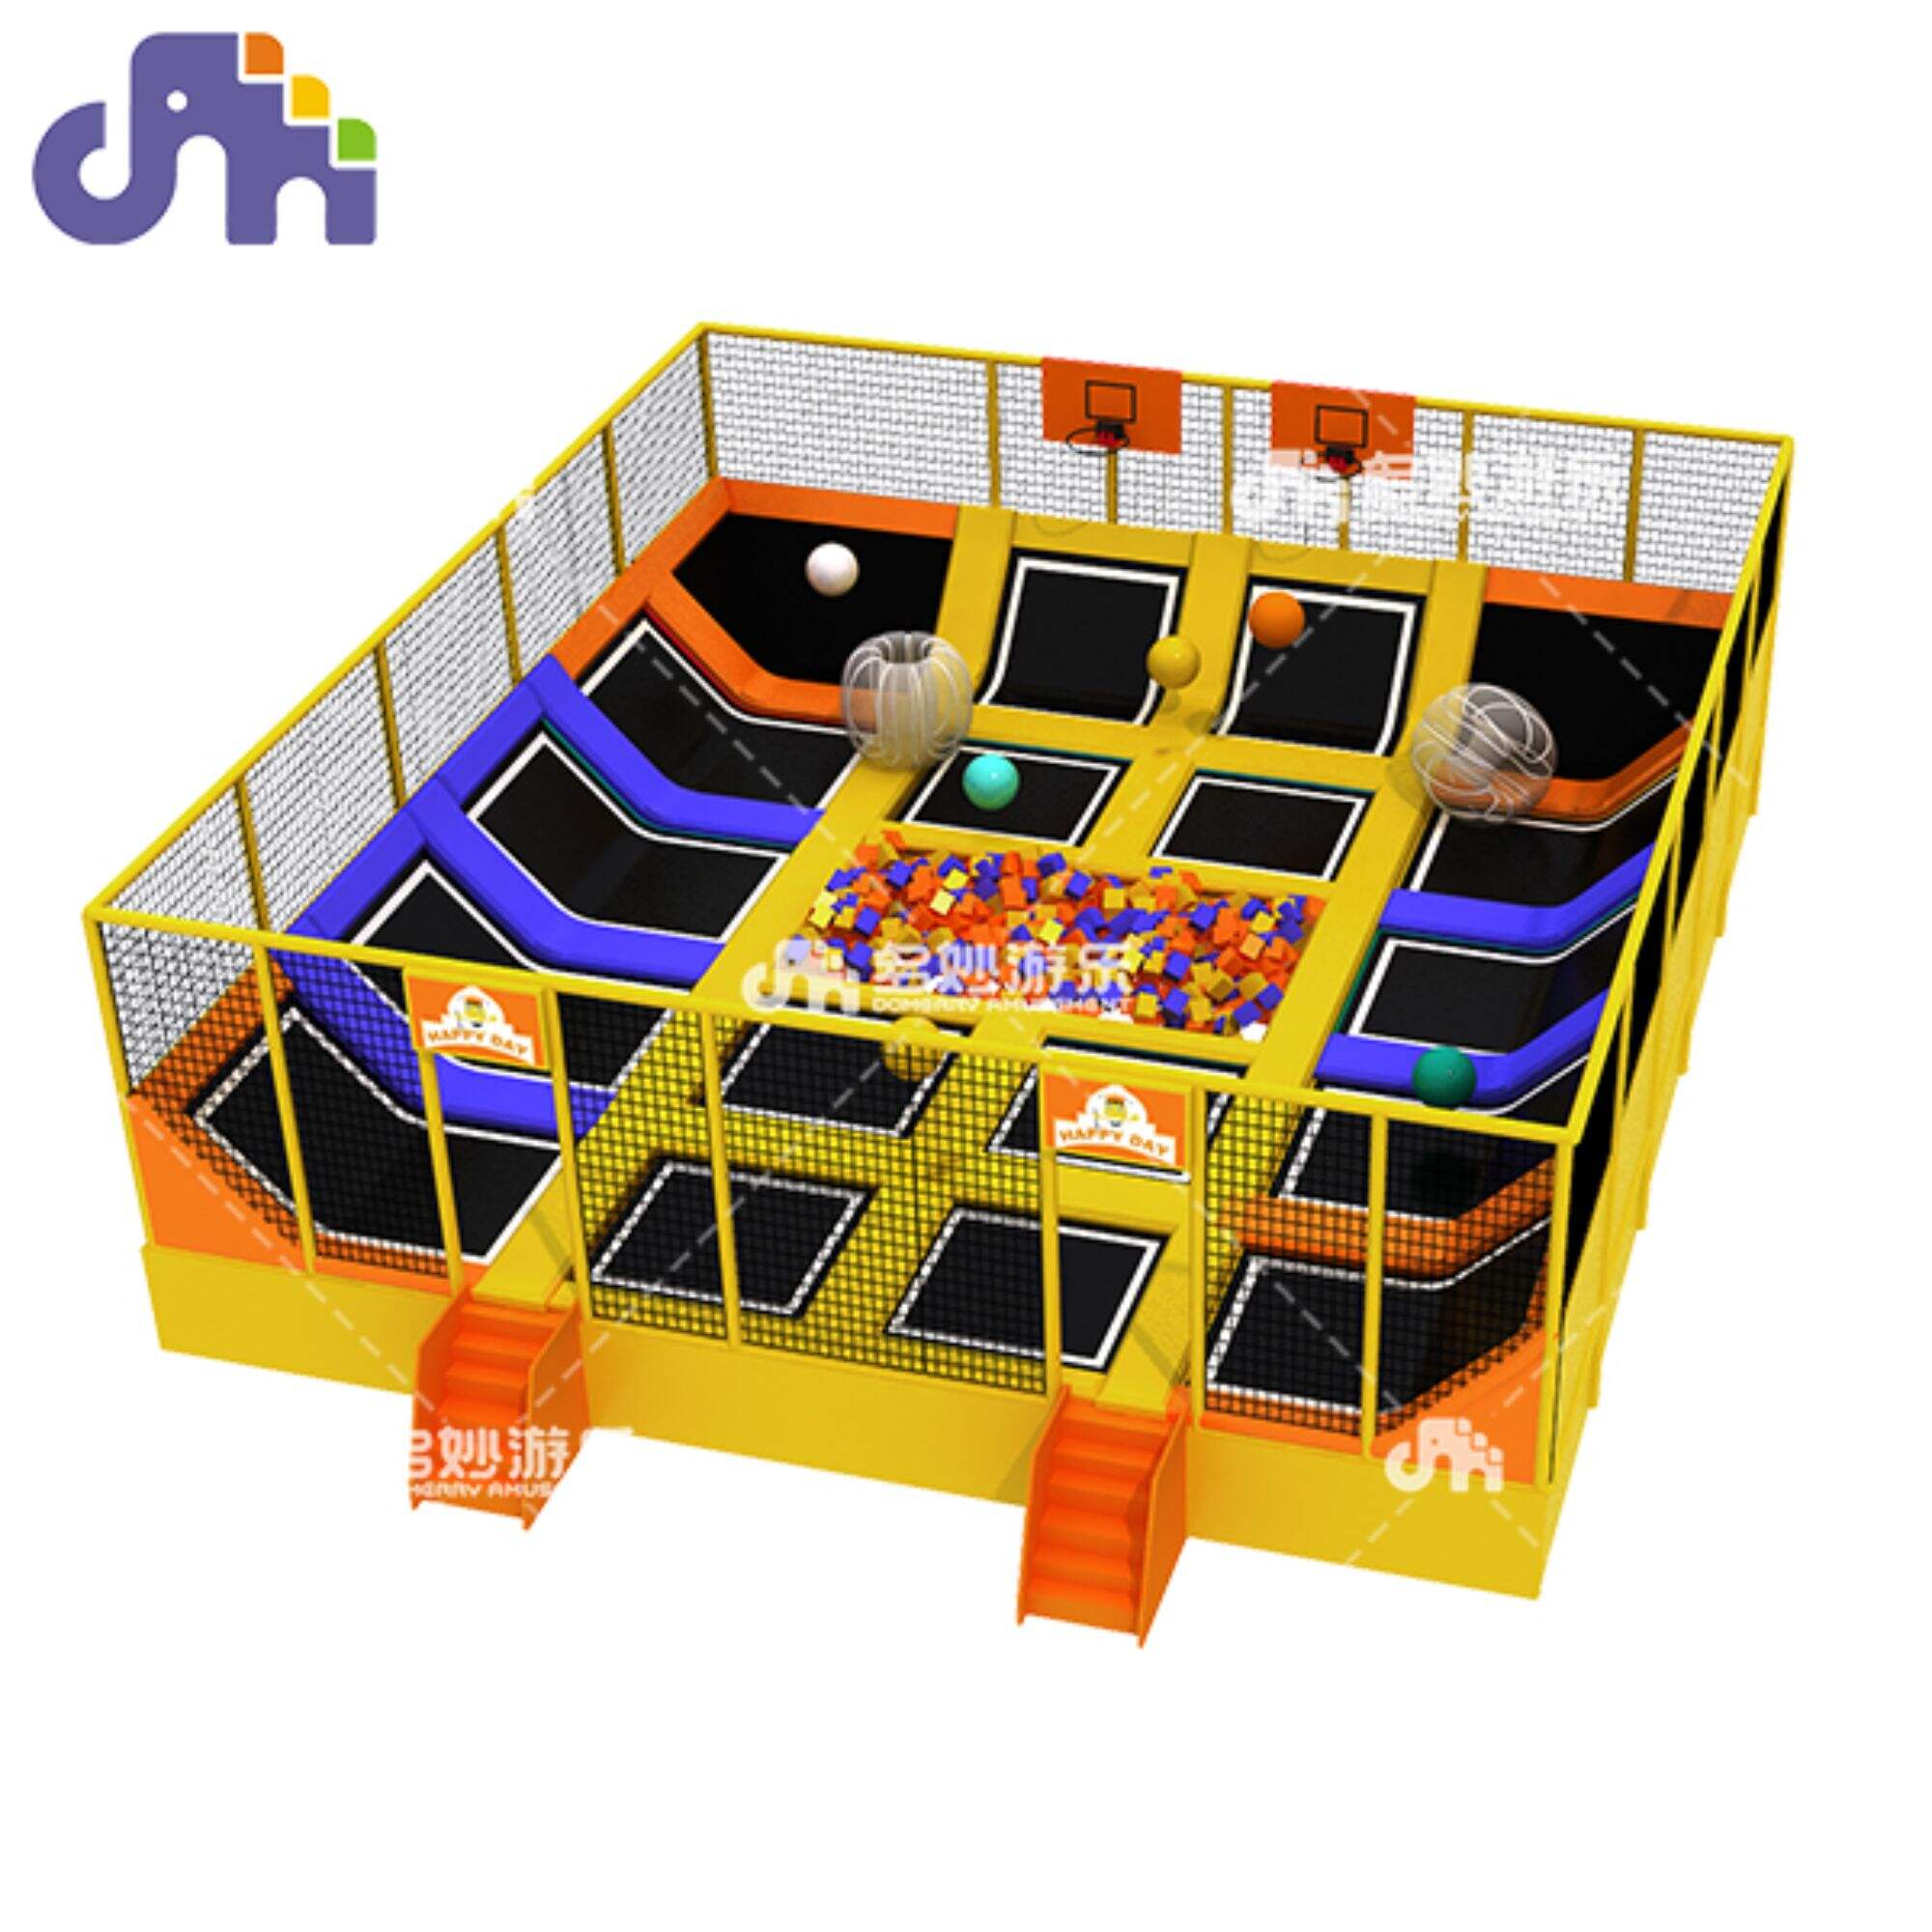 Parque de diversões infantil trampolim trampolim para diversão sem fim e brincadeiras ativas